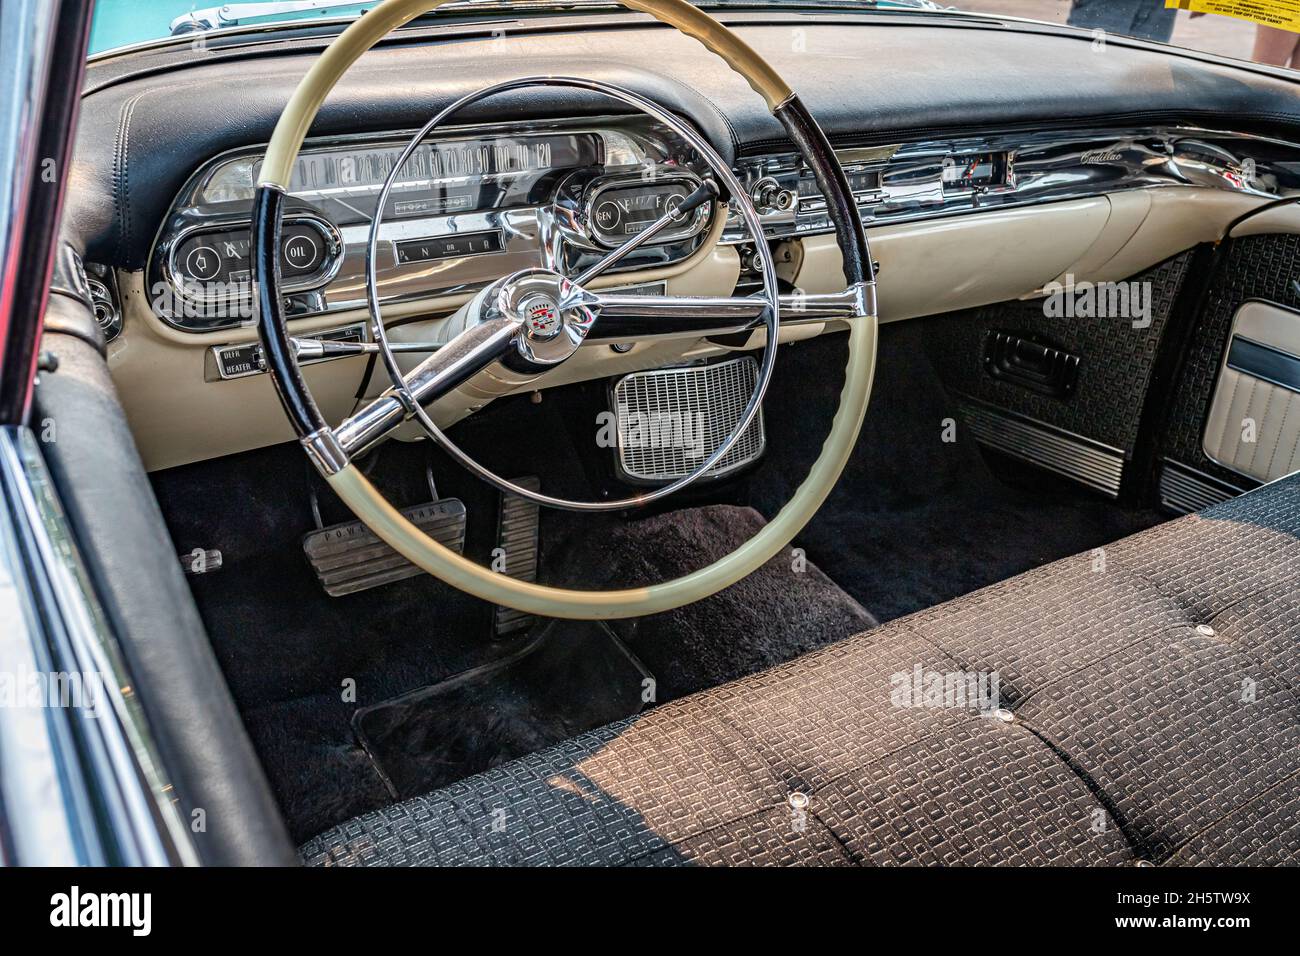 Reno, NV - August 6, 2021: 1957 Cadillac Coupe de Ville Hardtop at a local car show. Stock Photo